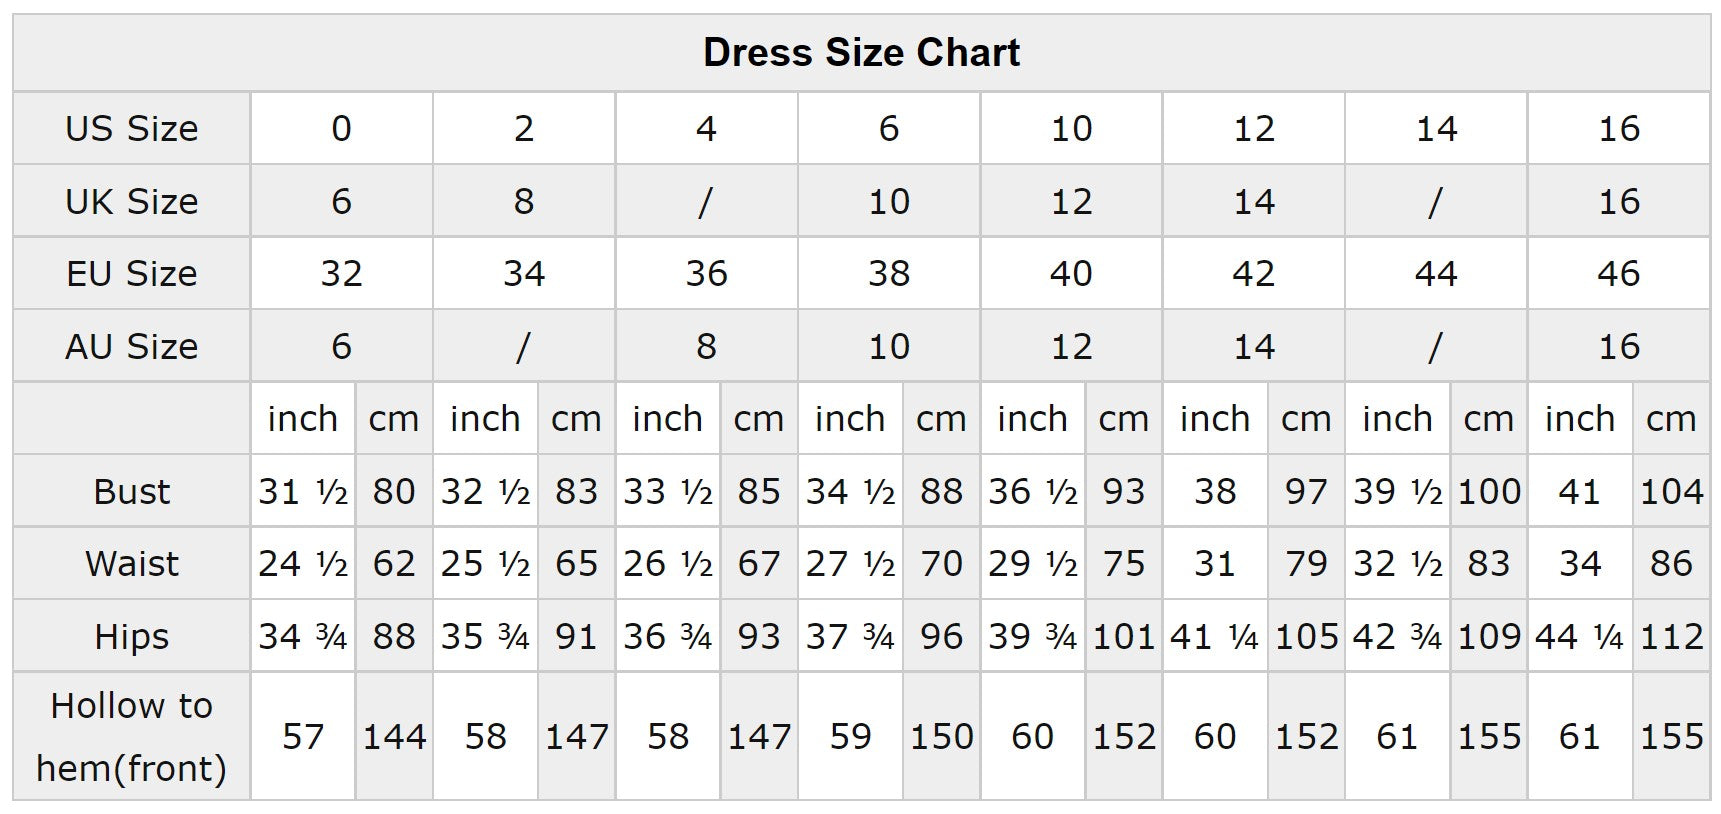 dress size chart uk to us